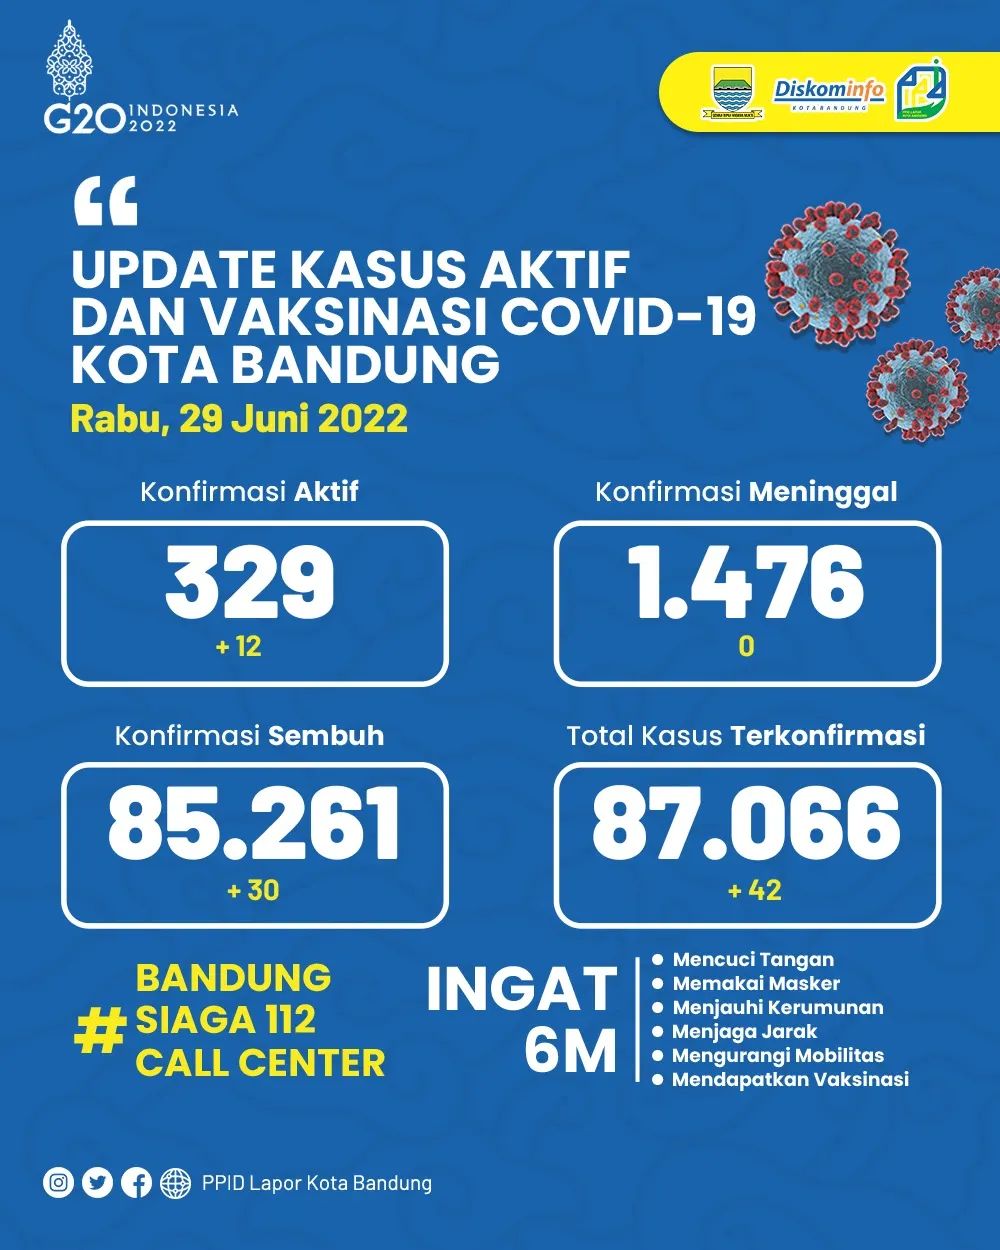 UPDATE STATISTIK COVID-19 DI KOTA BANDUNG PER TANGGAL 29 JUNI 2022